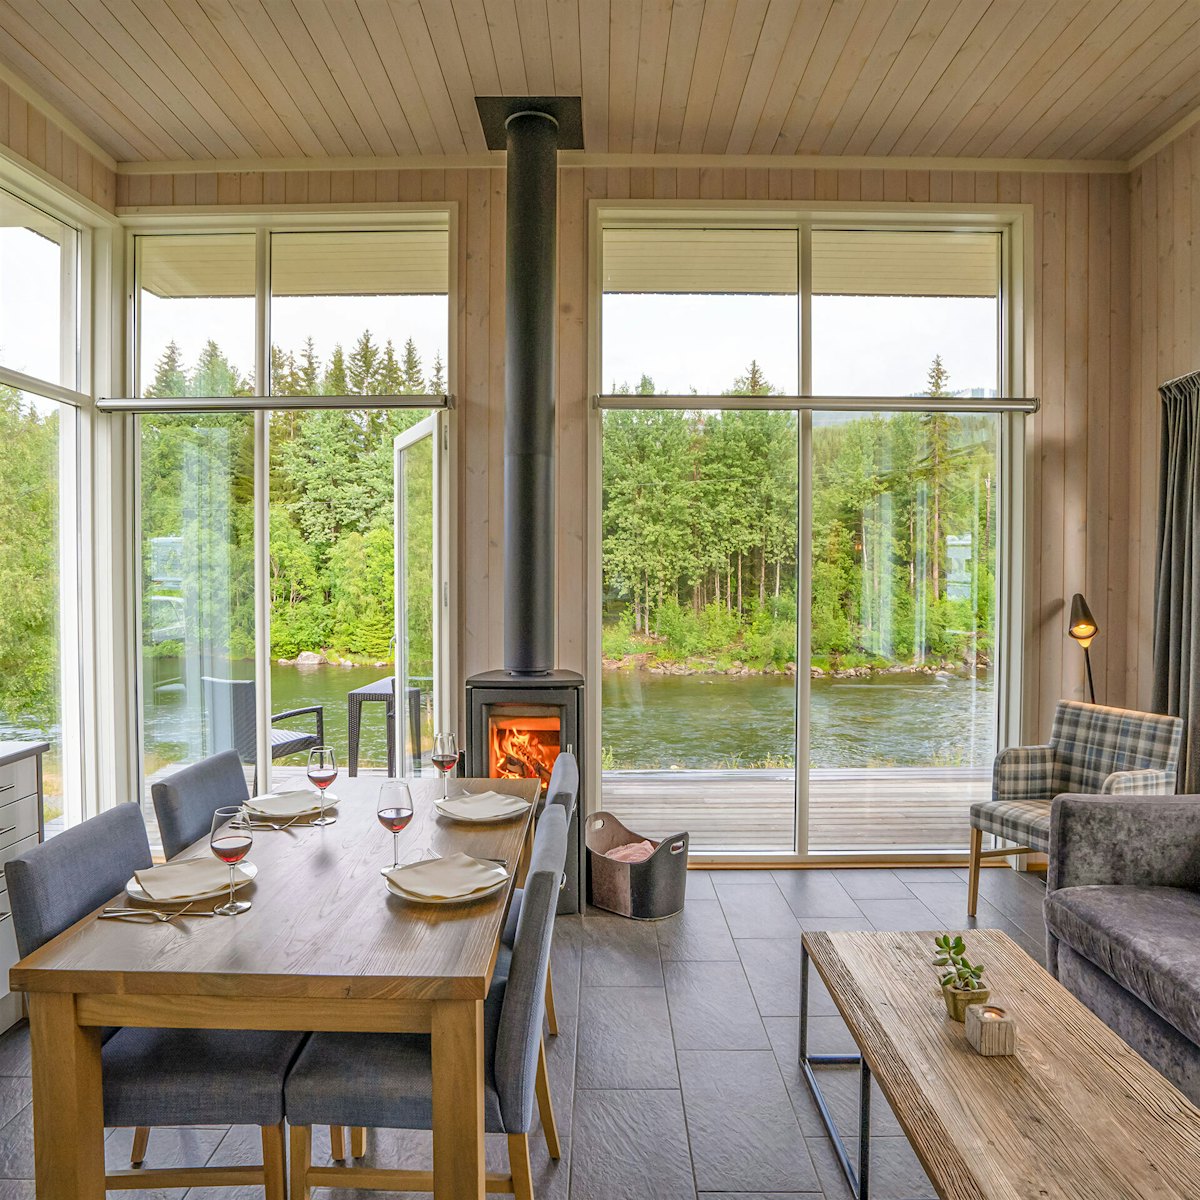 Lys stue med vinduer fra gulv til tak, spisebord sofa og peis. Utsikt over grønne trær og elv. Foto